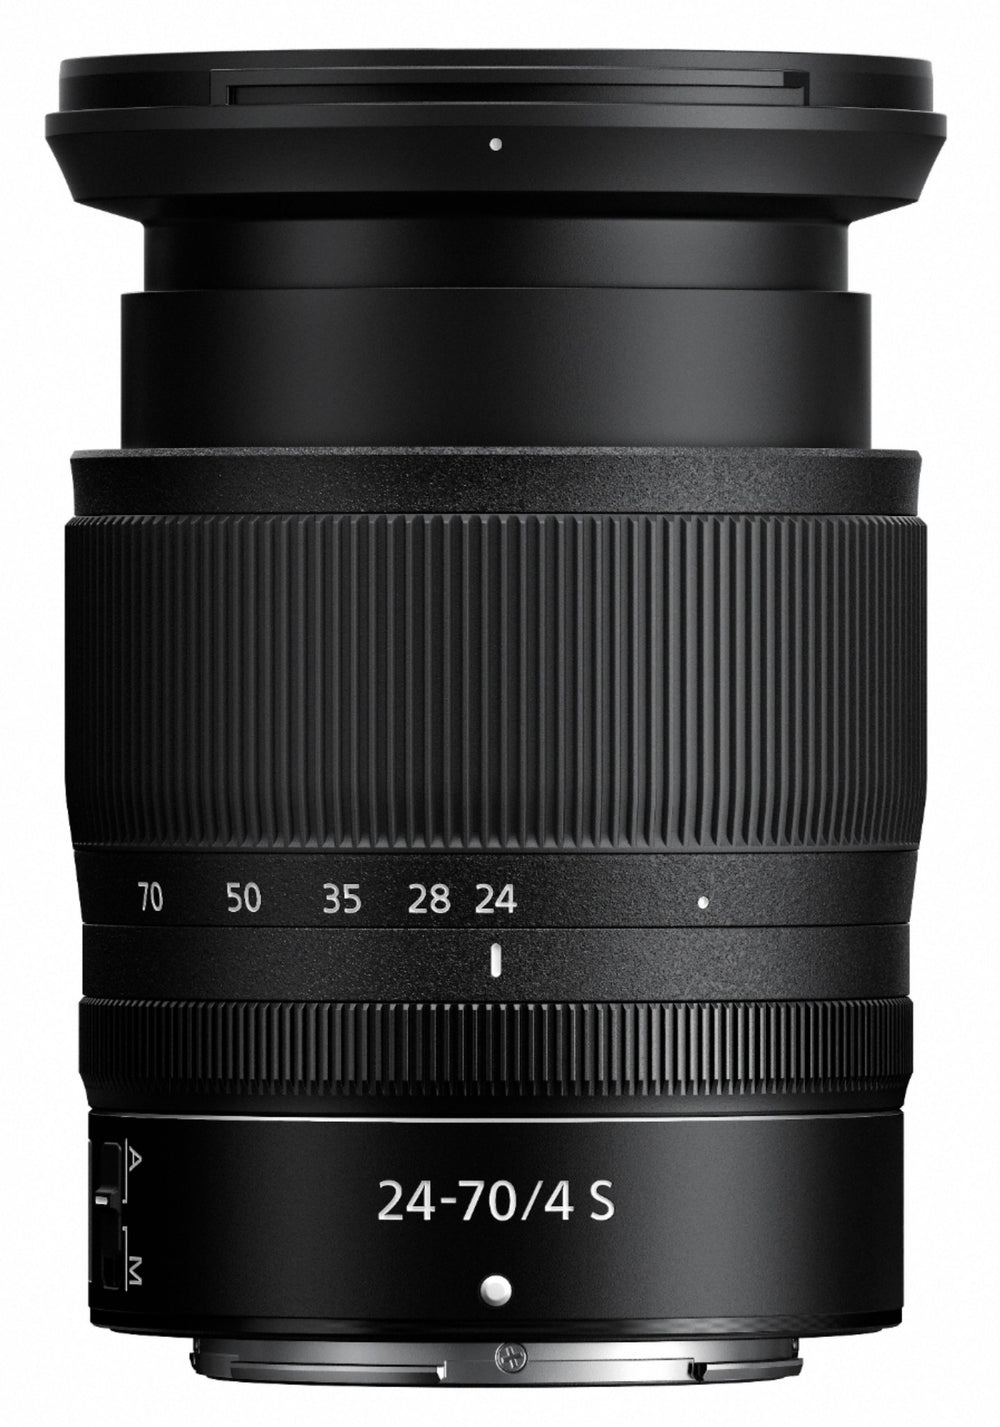 NIKKOR Z 24-70mm f/4 S Standard Zoom Lens for Nikon Z Cameras - Black_1